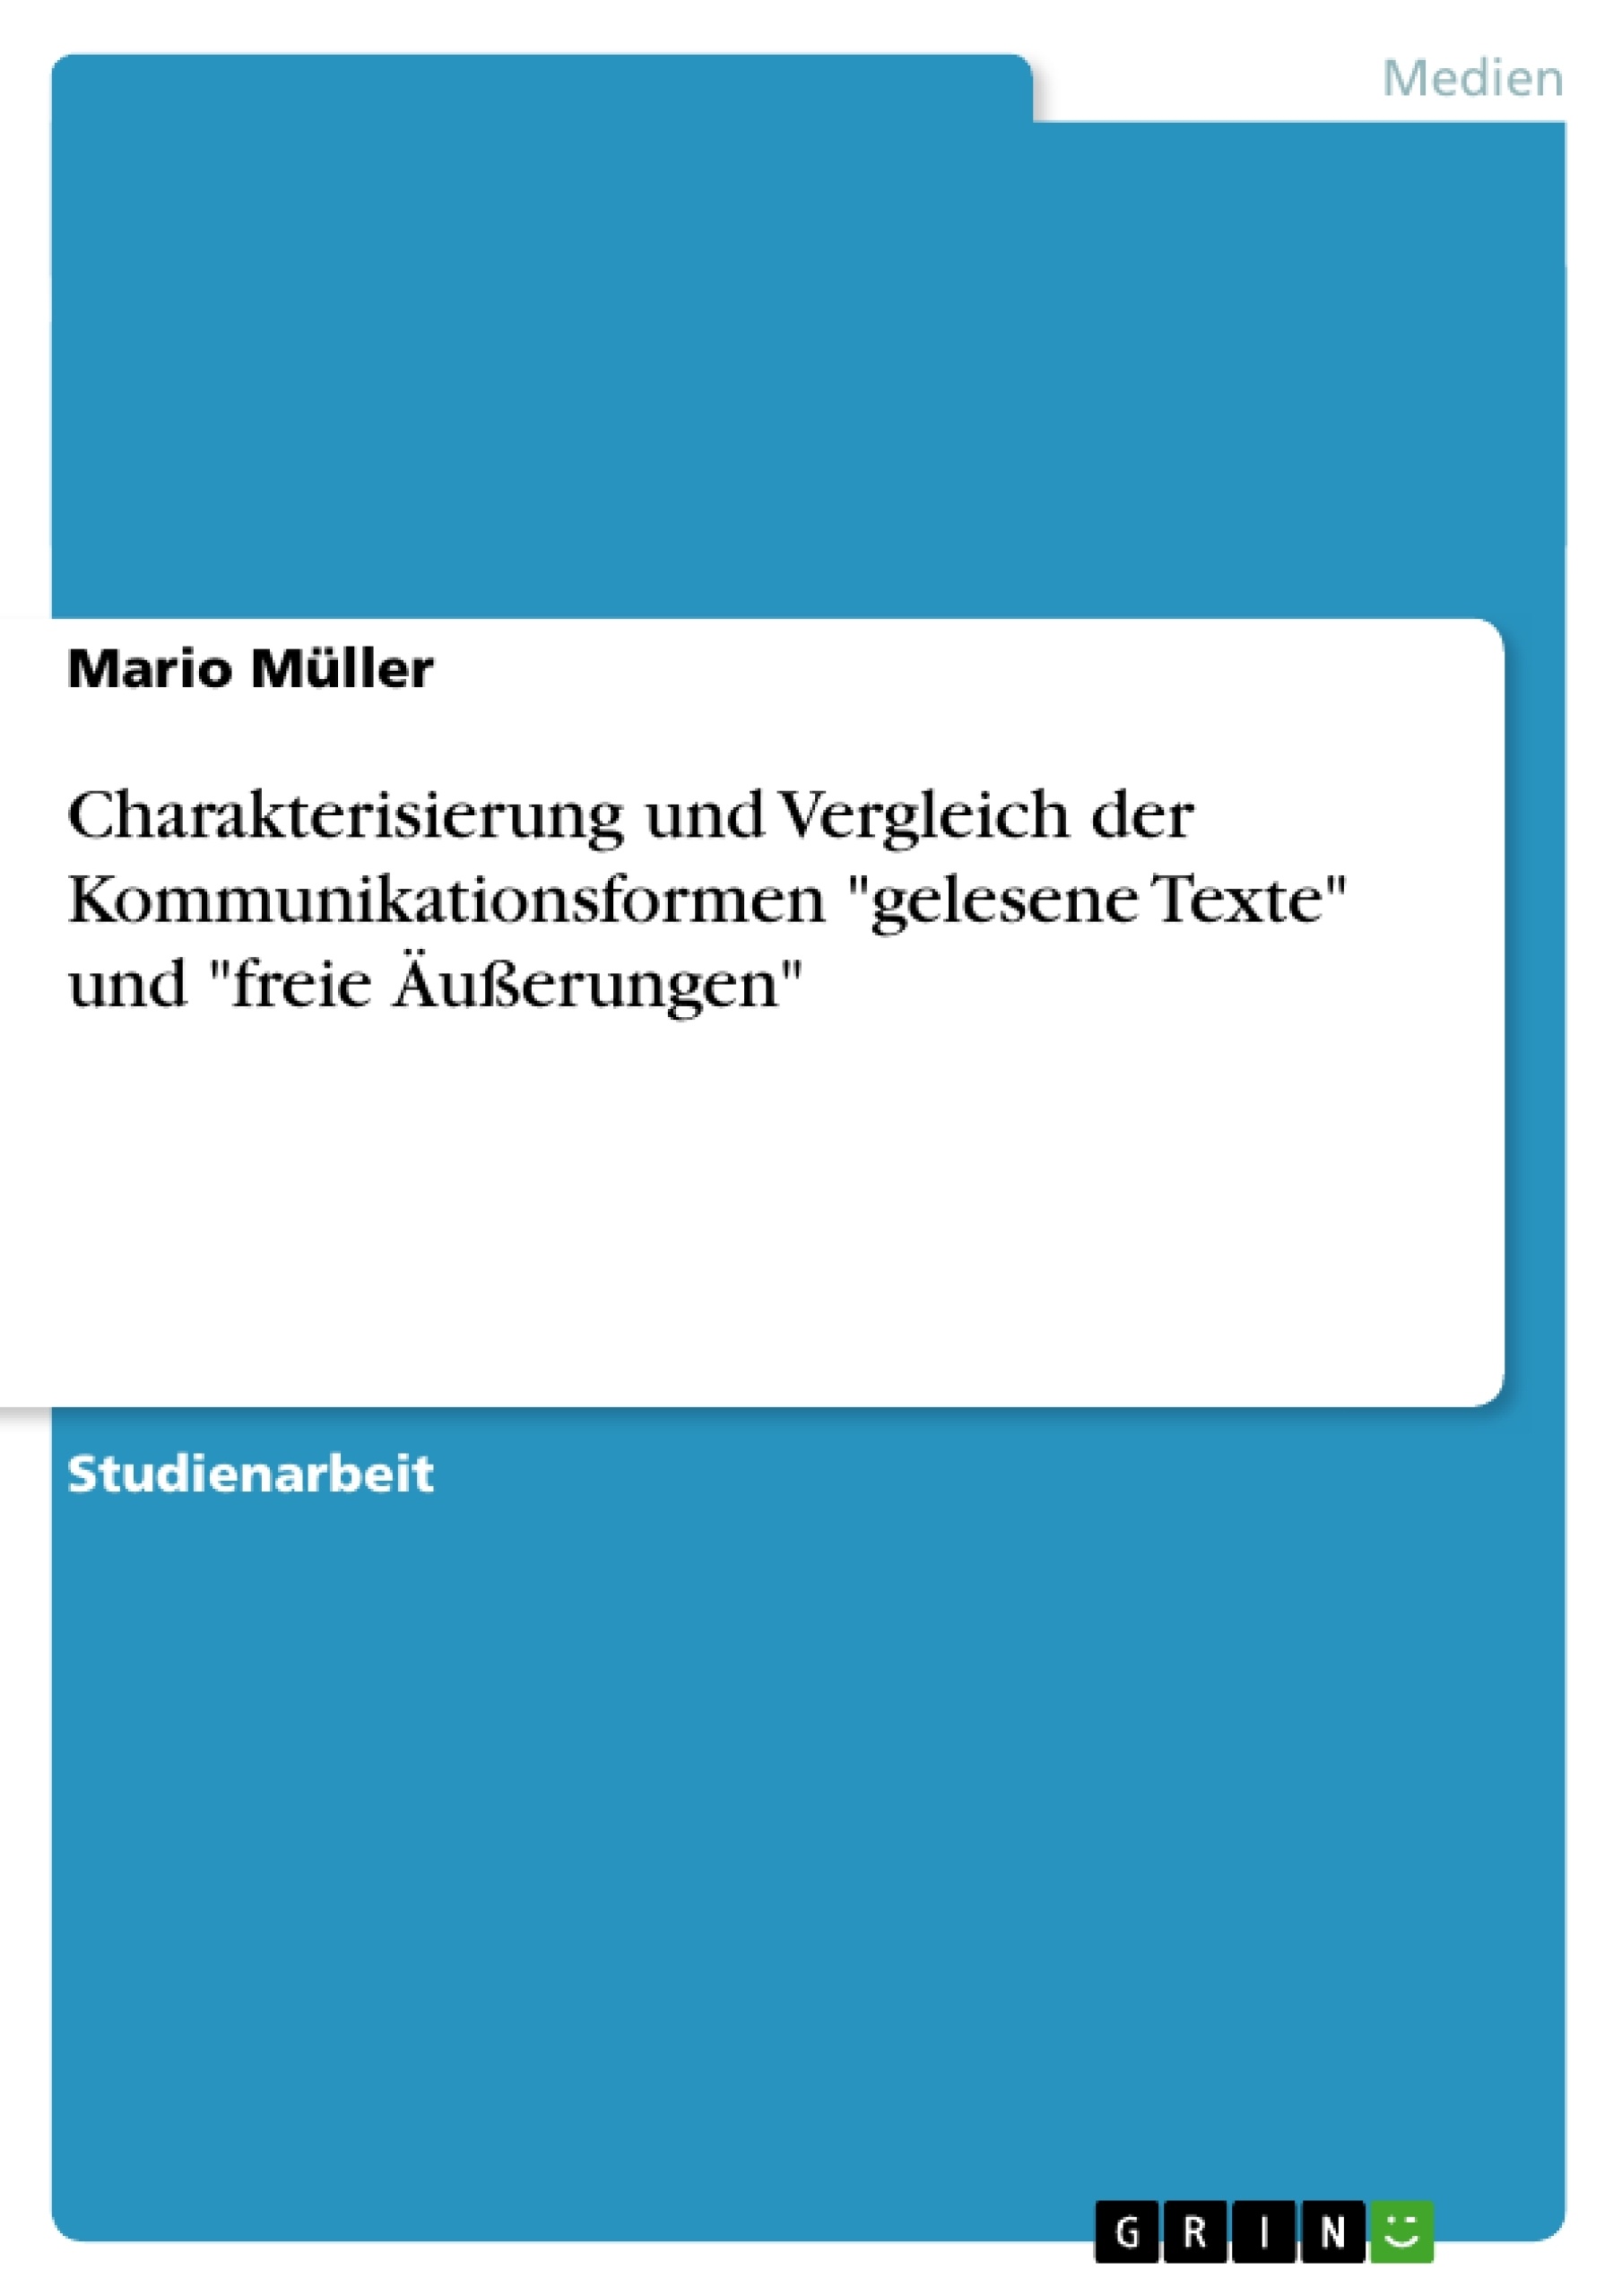 Title: Charakterisierung und Vergleich der Kommunikationsformen "gelesene Texte" und "freie Äußerungen"